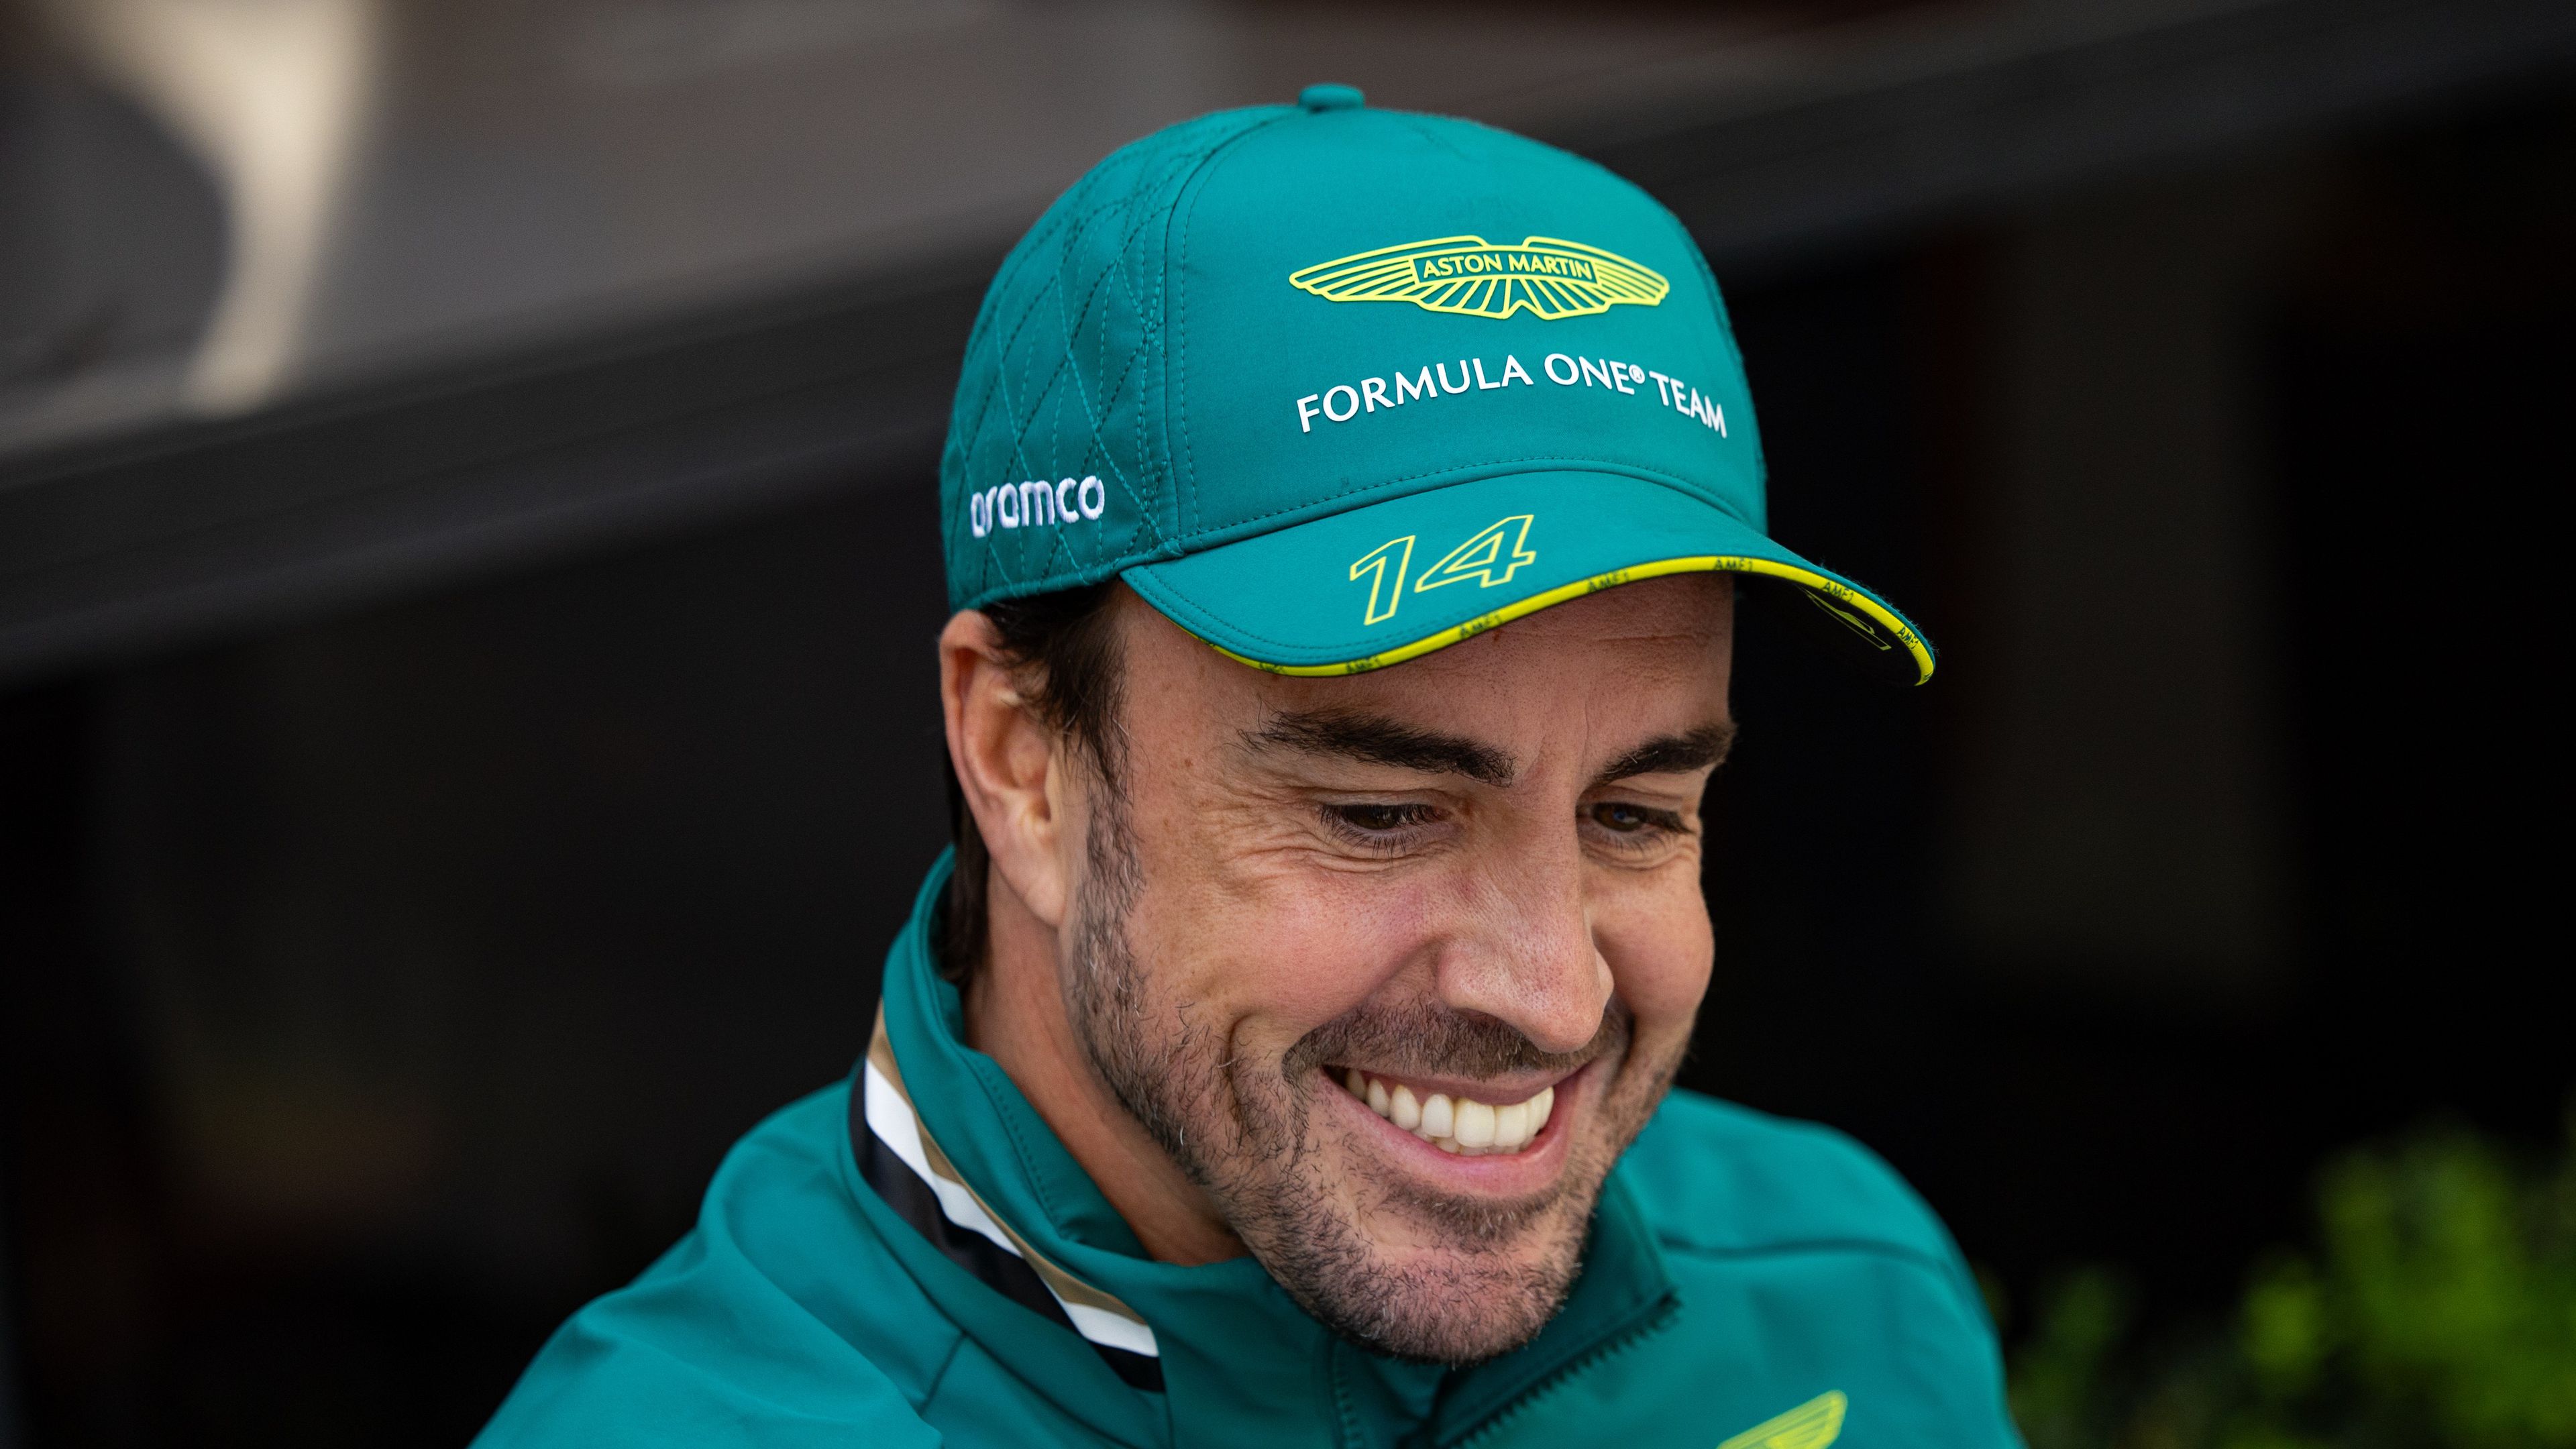 Fernando Alonso jelenleg az Aston Martin pilótája